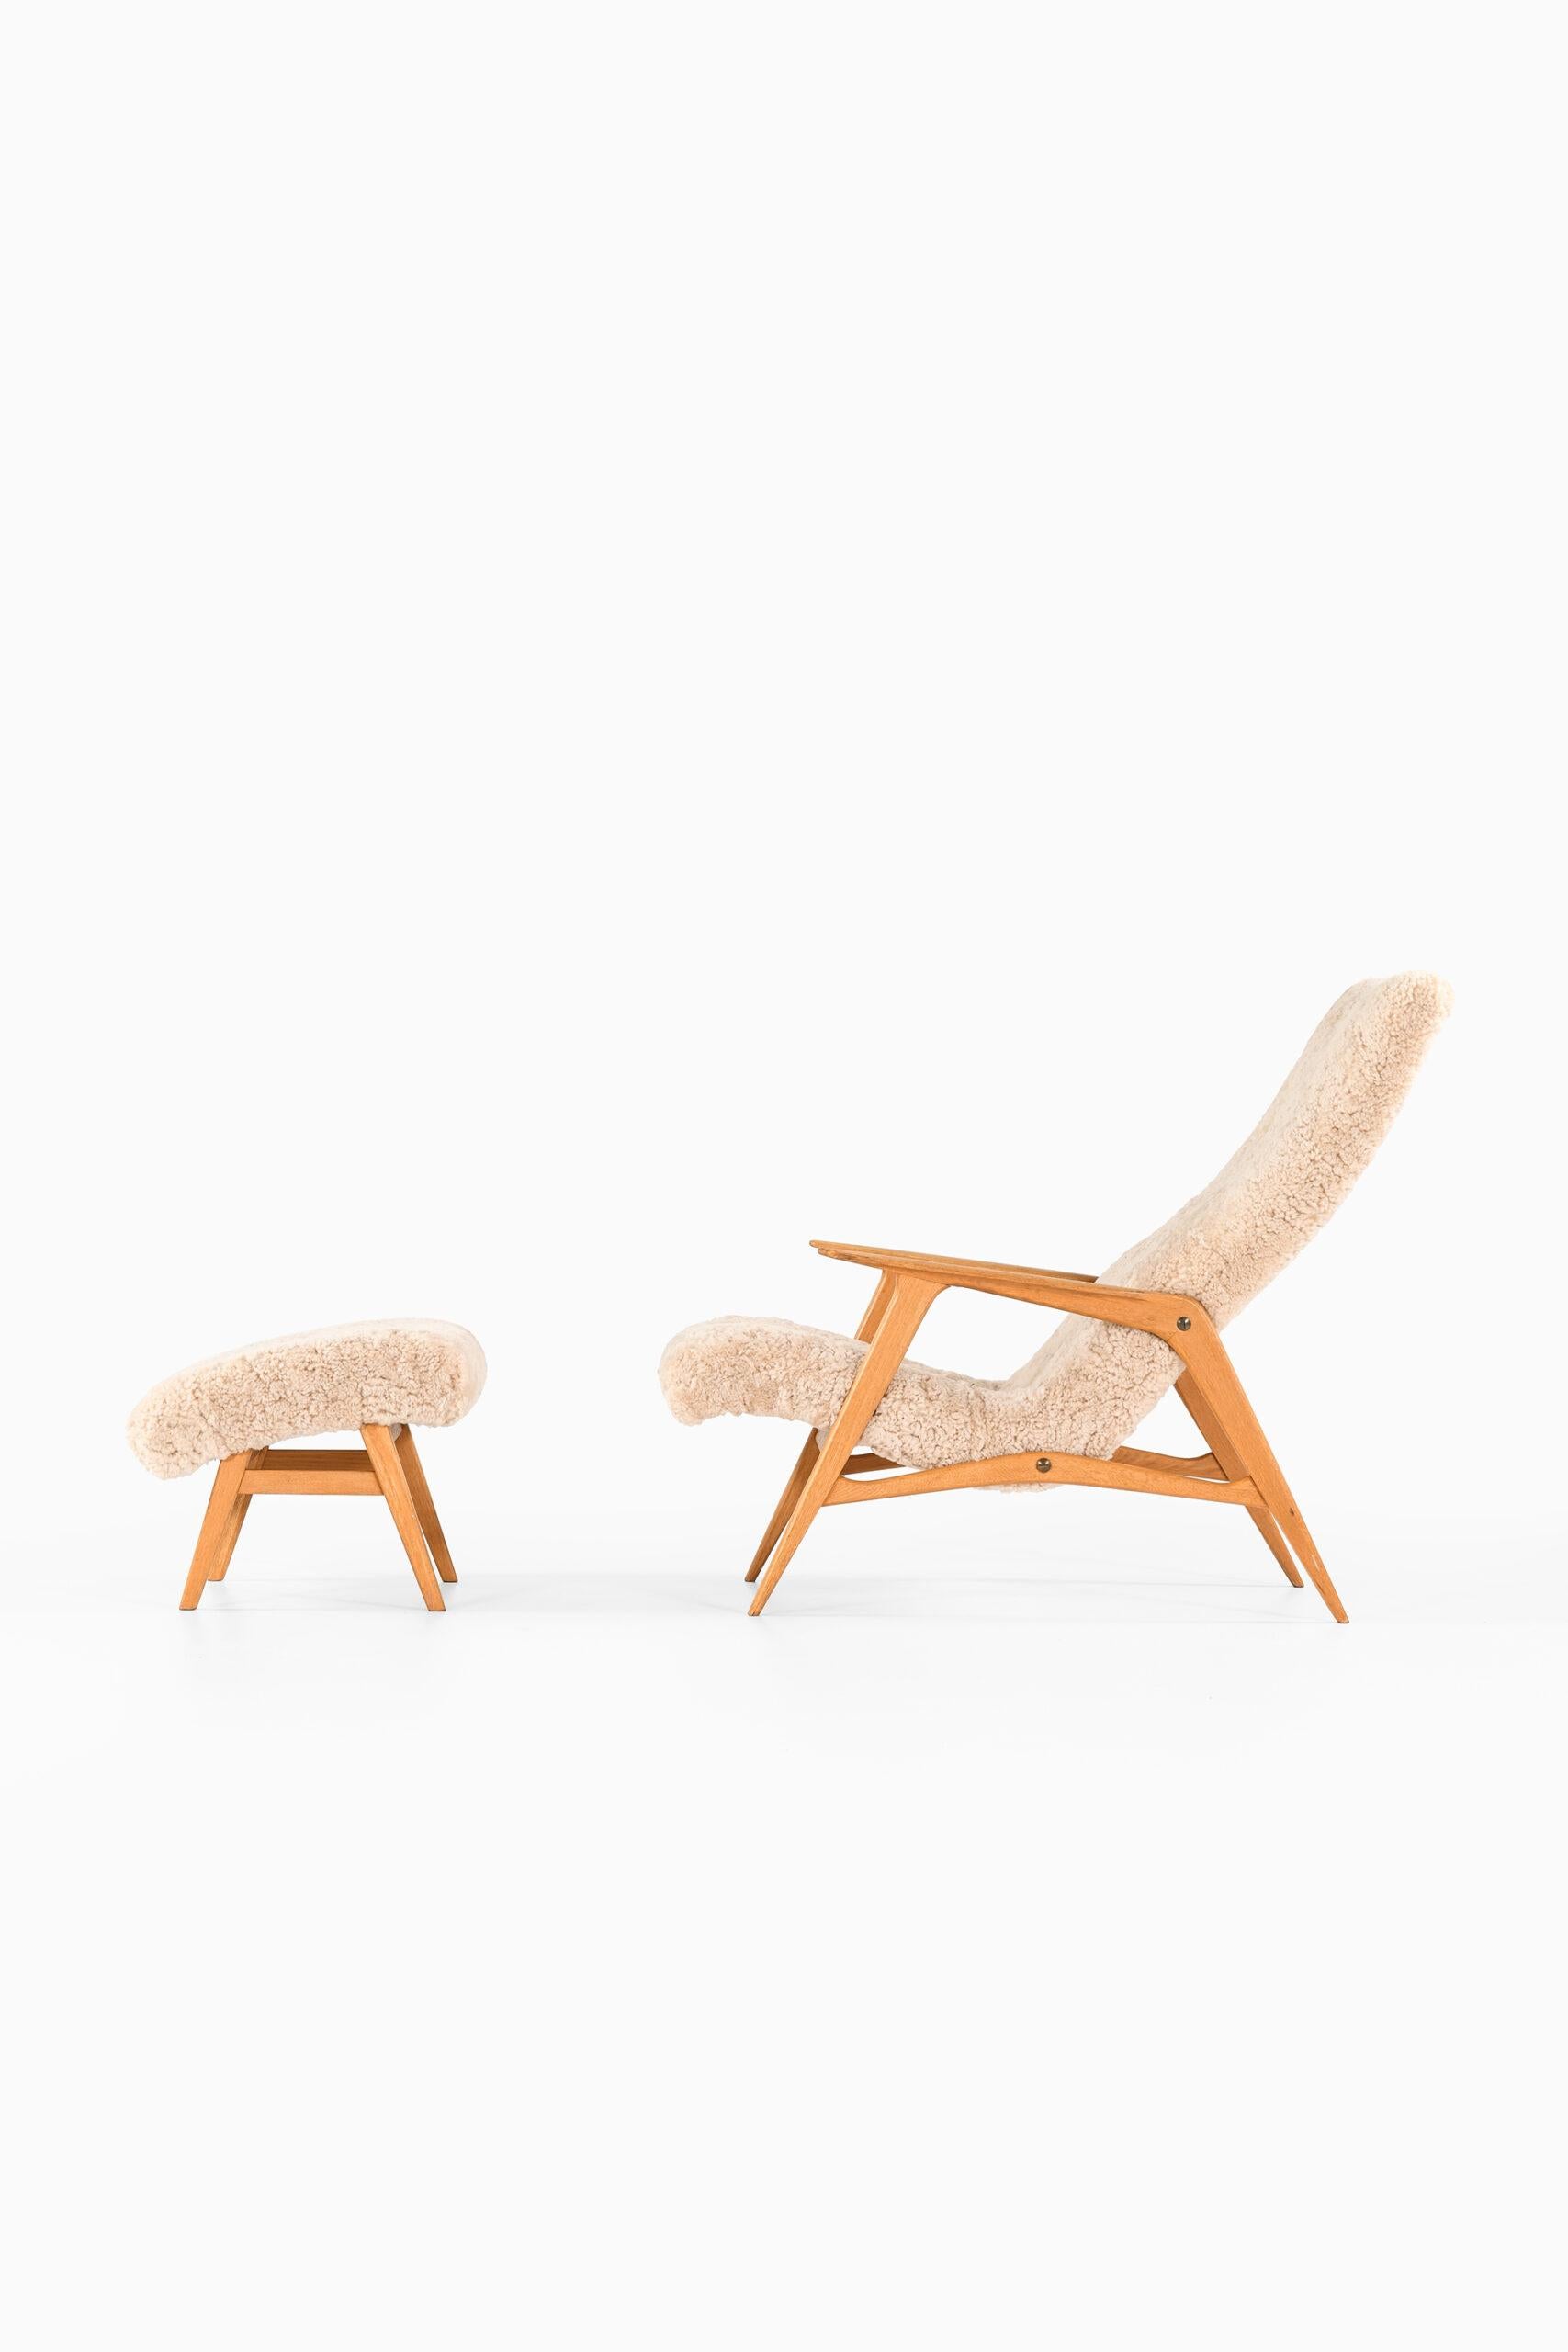 Seltener Sessel mit Hocker Modell Siesta von unbekanntem Designer. Produziert von JIO Möbler in Schweden.
Abmessungen (B x T x H): 63,5 x 115 x 93 cm, SH: 33 cm.
Maße Hocker (B x T x H): 58 x 50 x 39 cm.